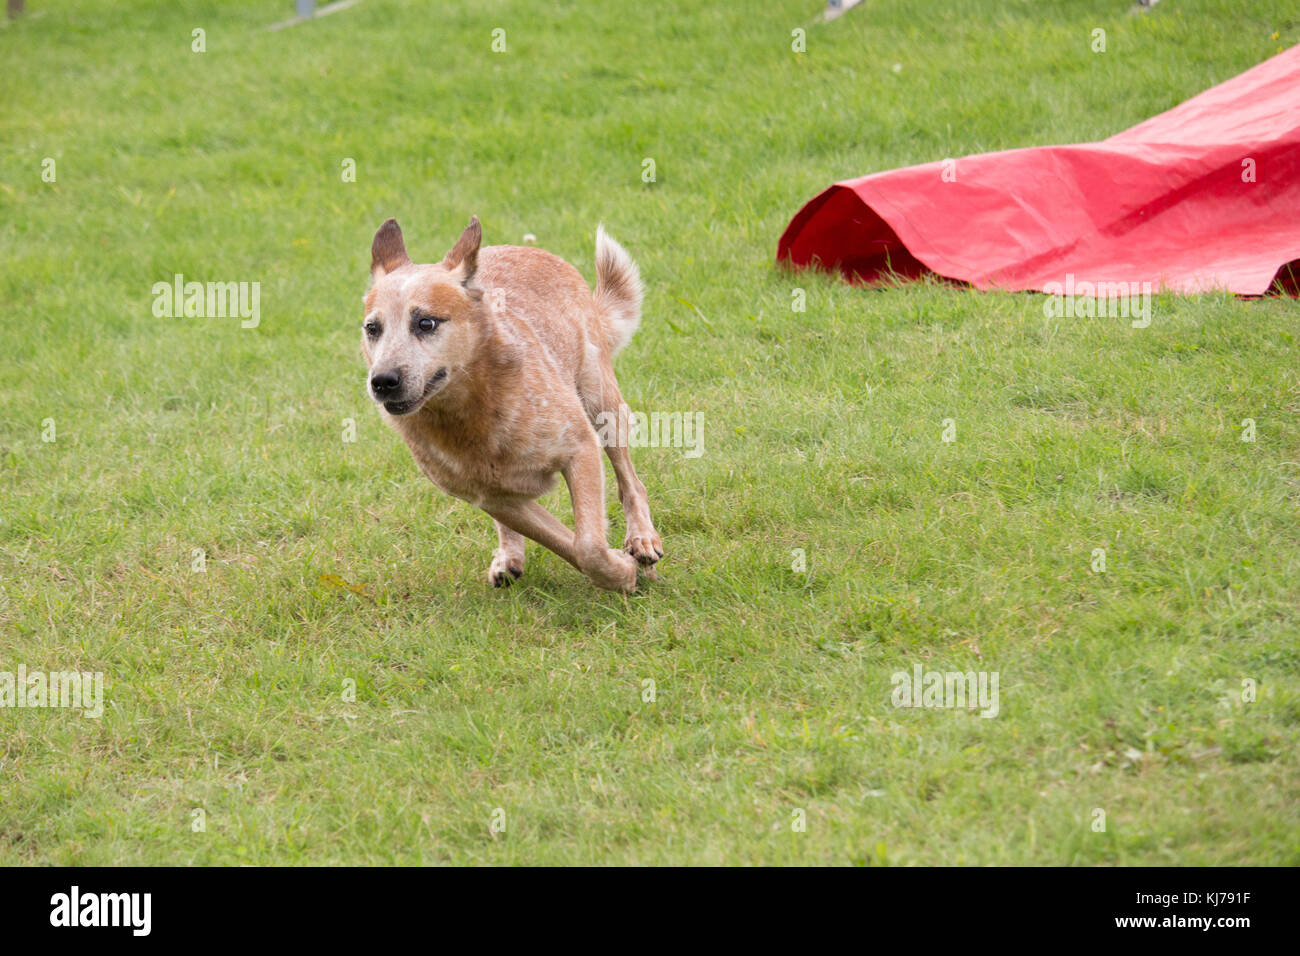 an Australian cattle dog runs in an agility canine contest Stock Photo